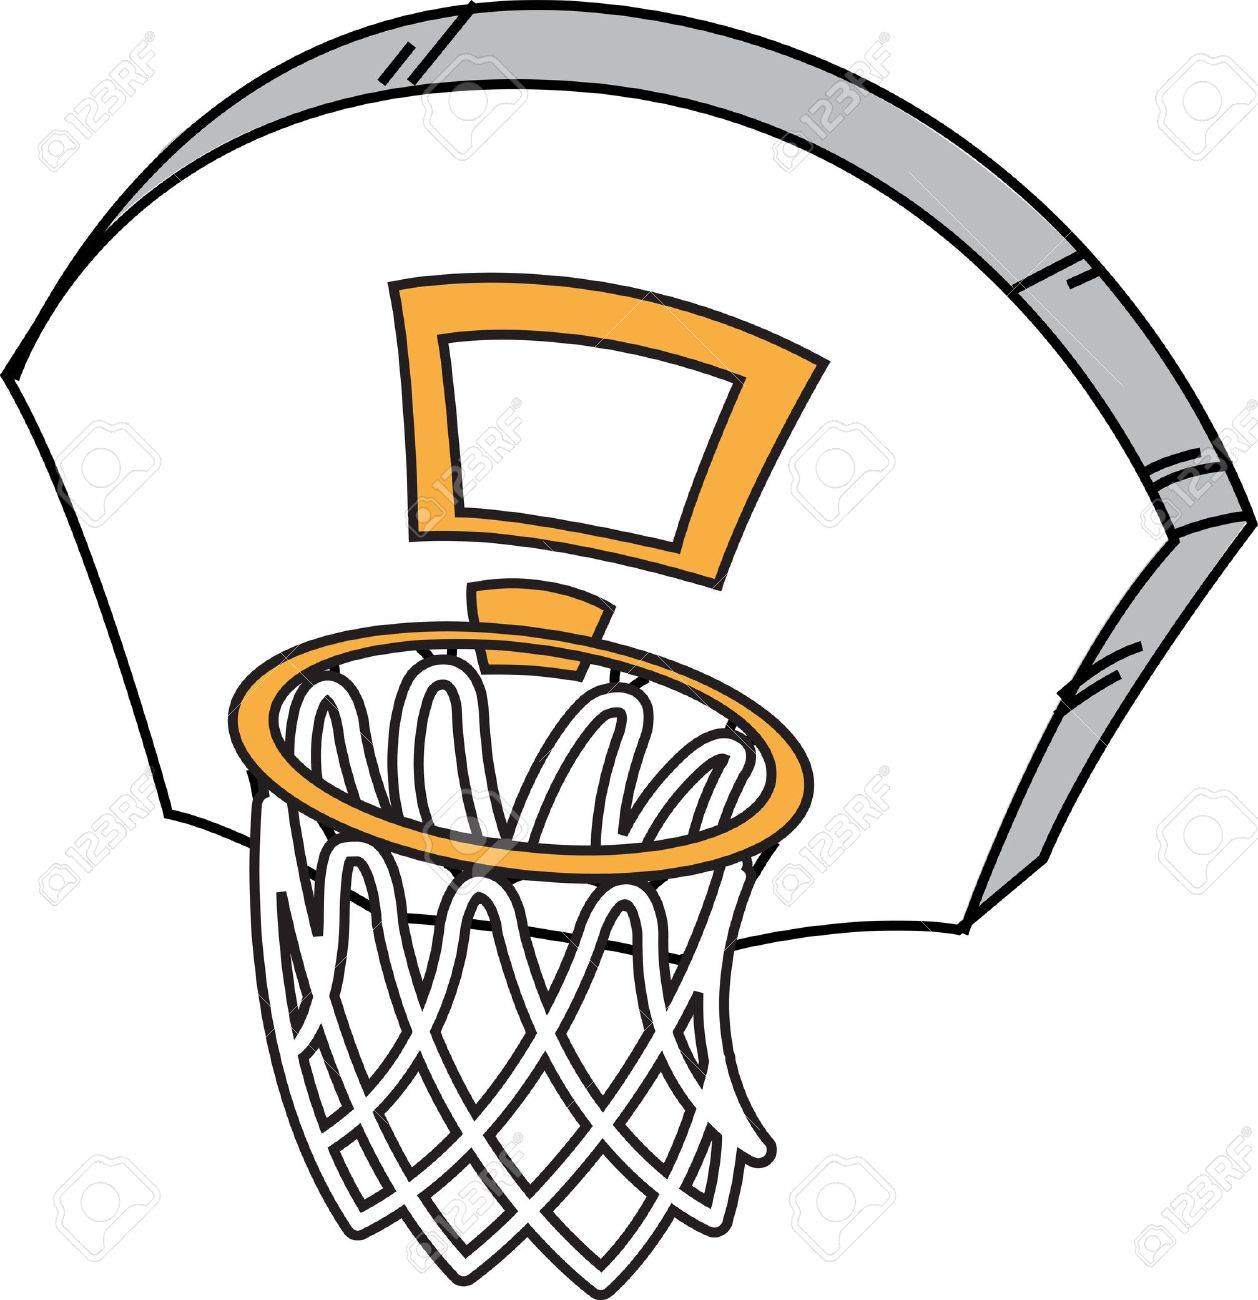 Basketball Hoop Drawing at GetDrawings | Free download